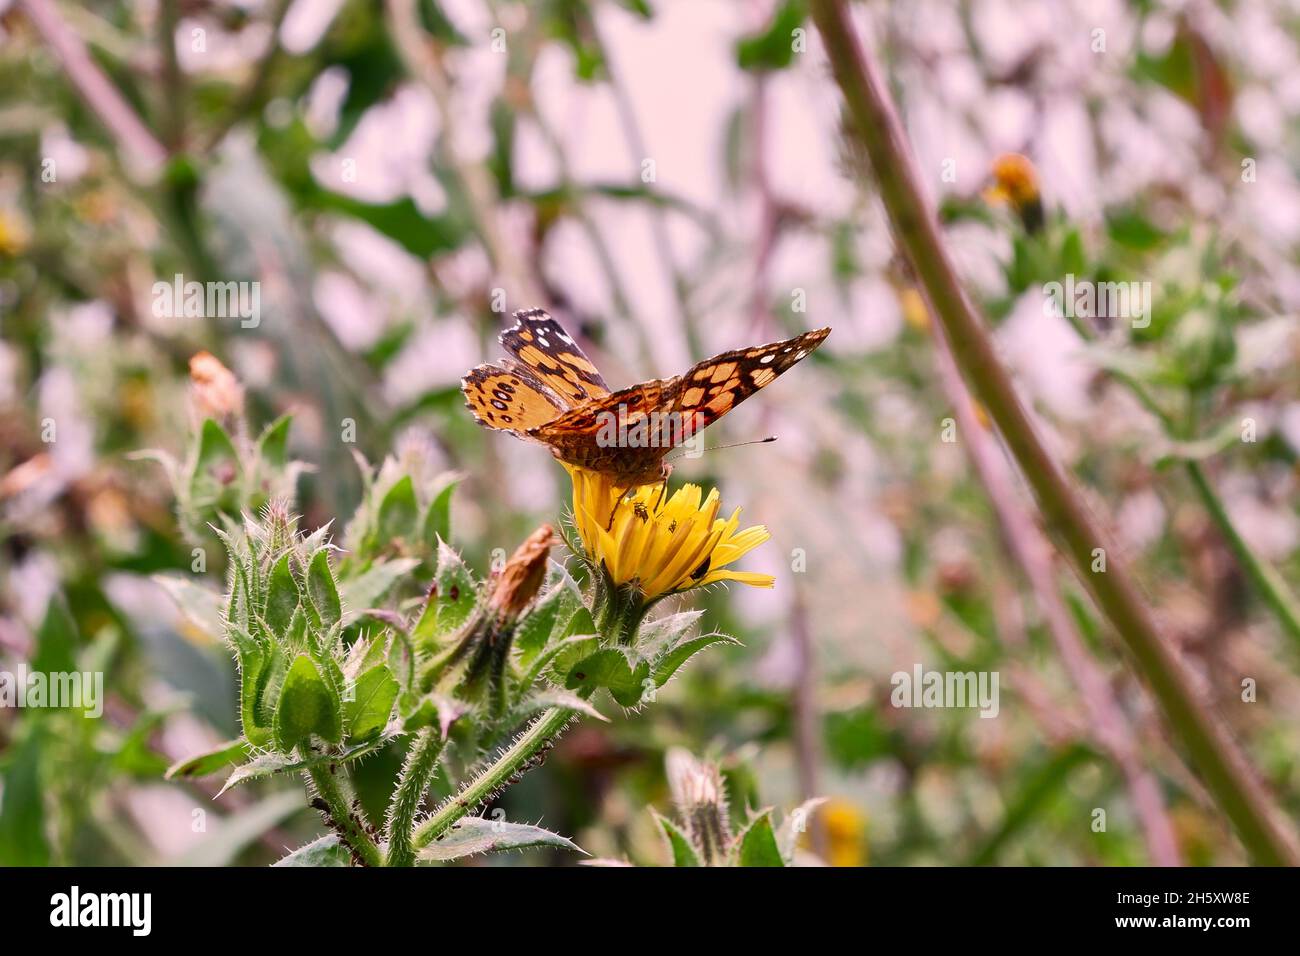 Selettivo di una farfalla su un fiore Foto Stock